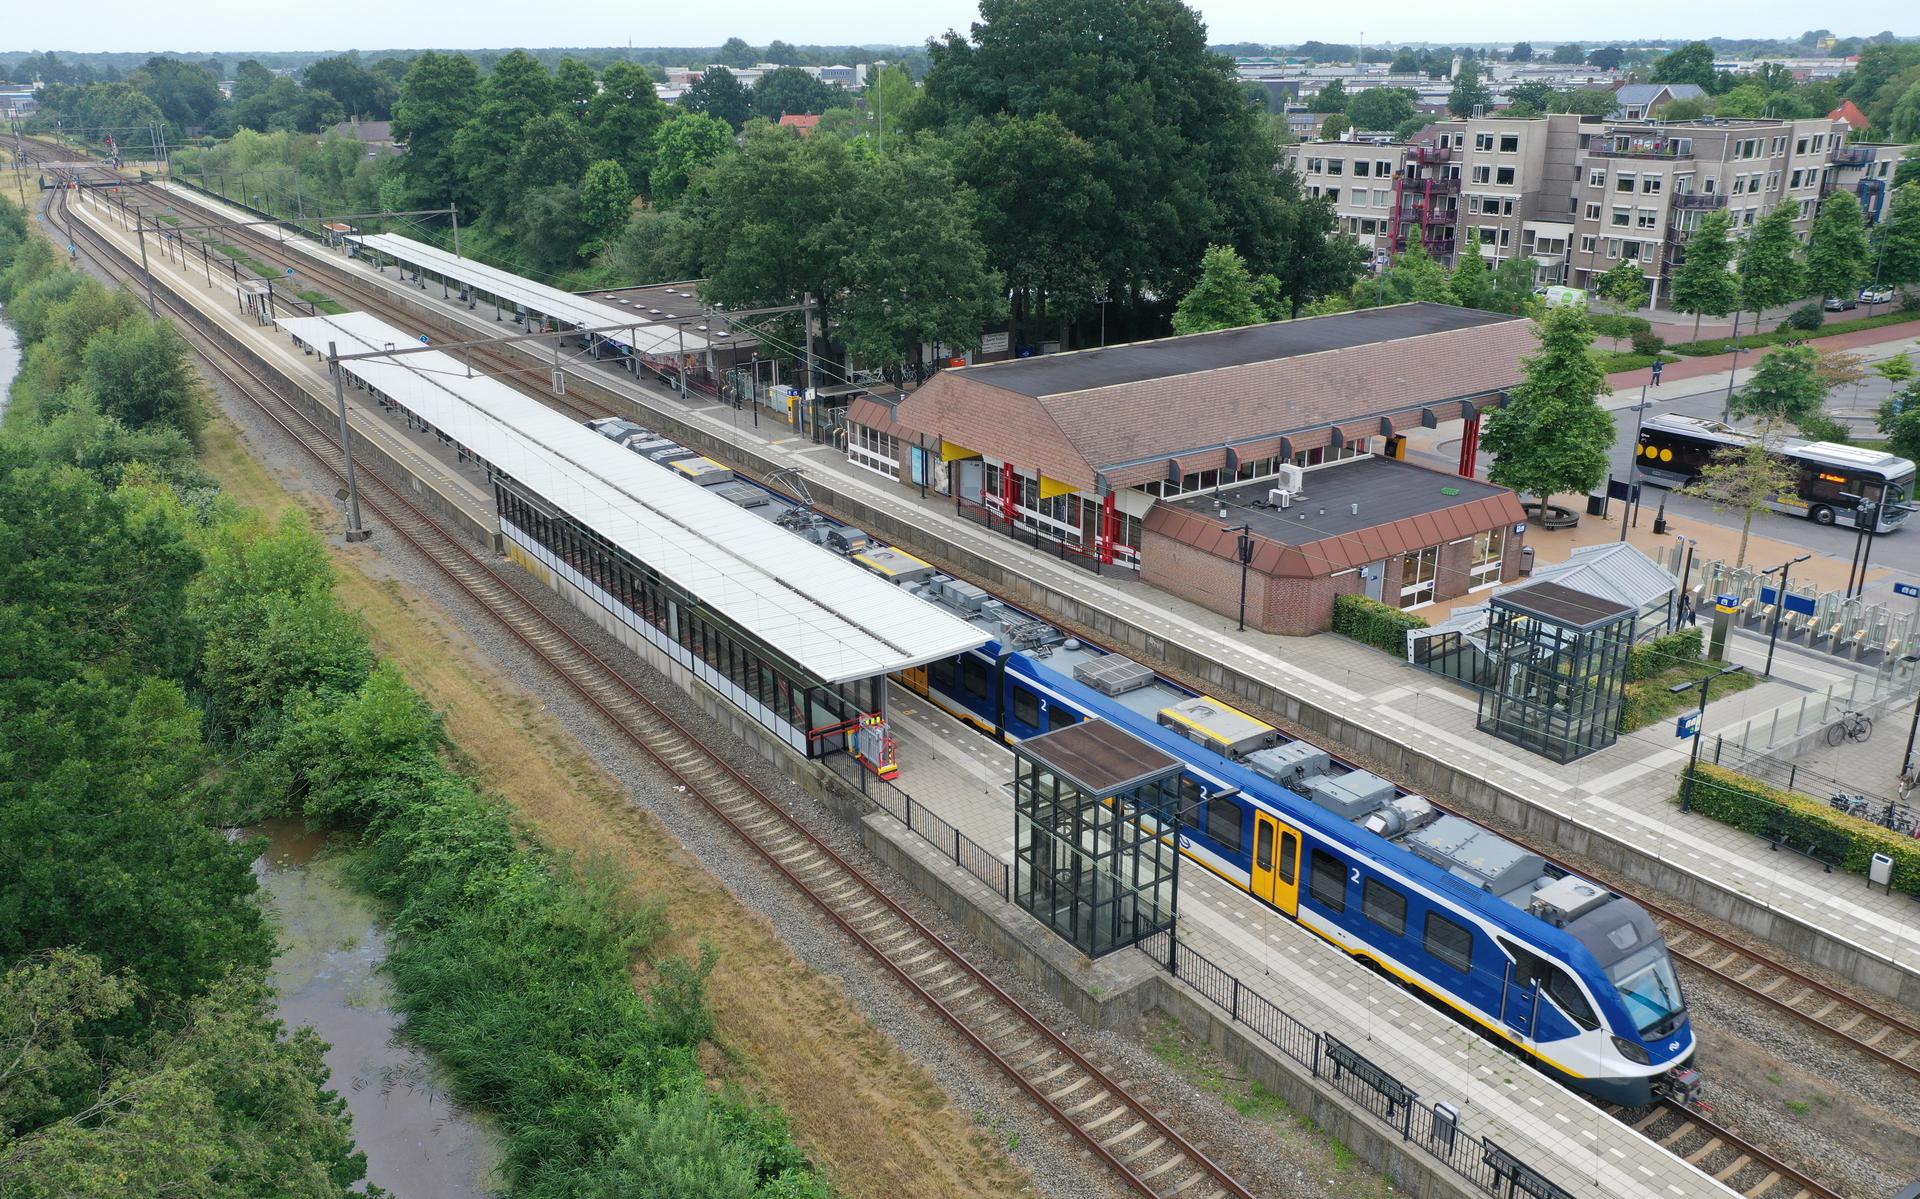 Station Hoogeveen.